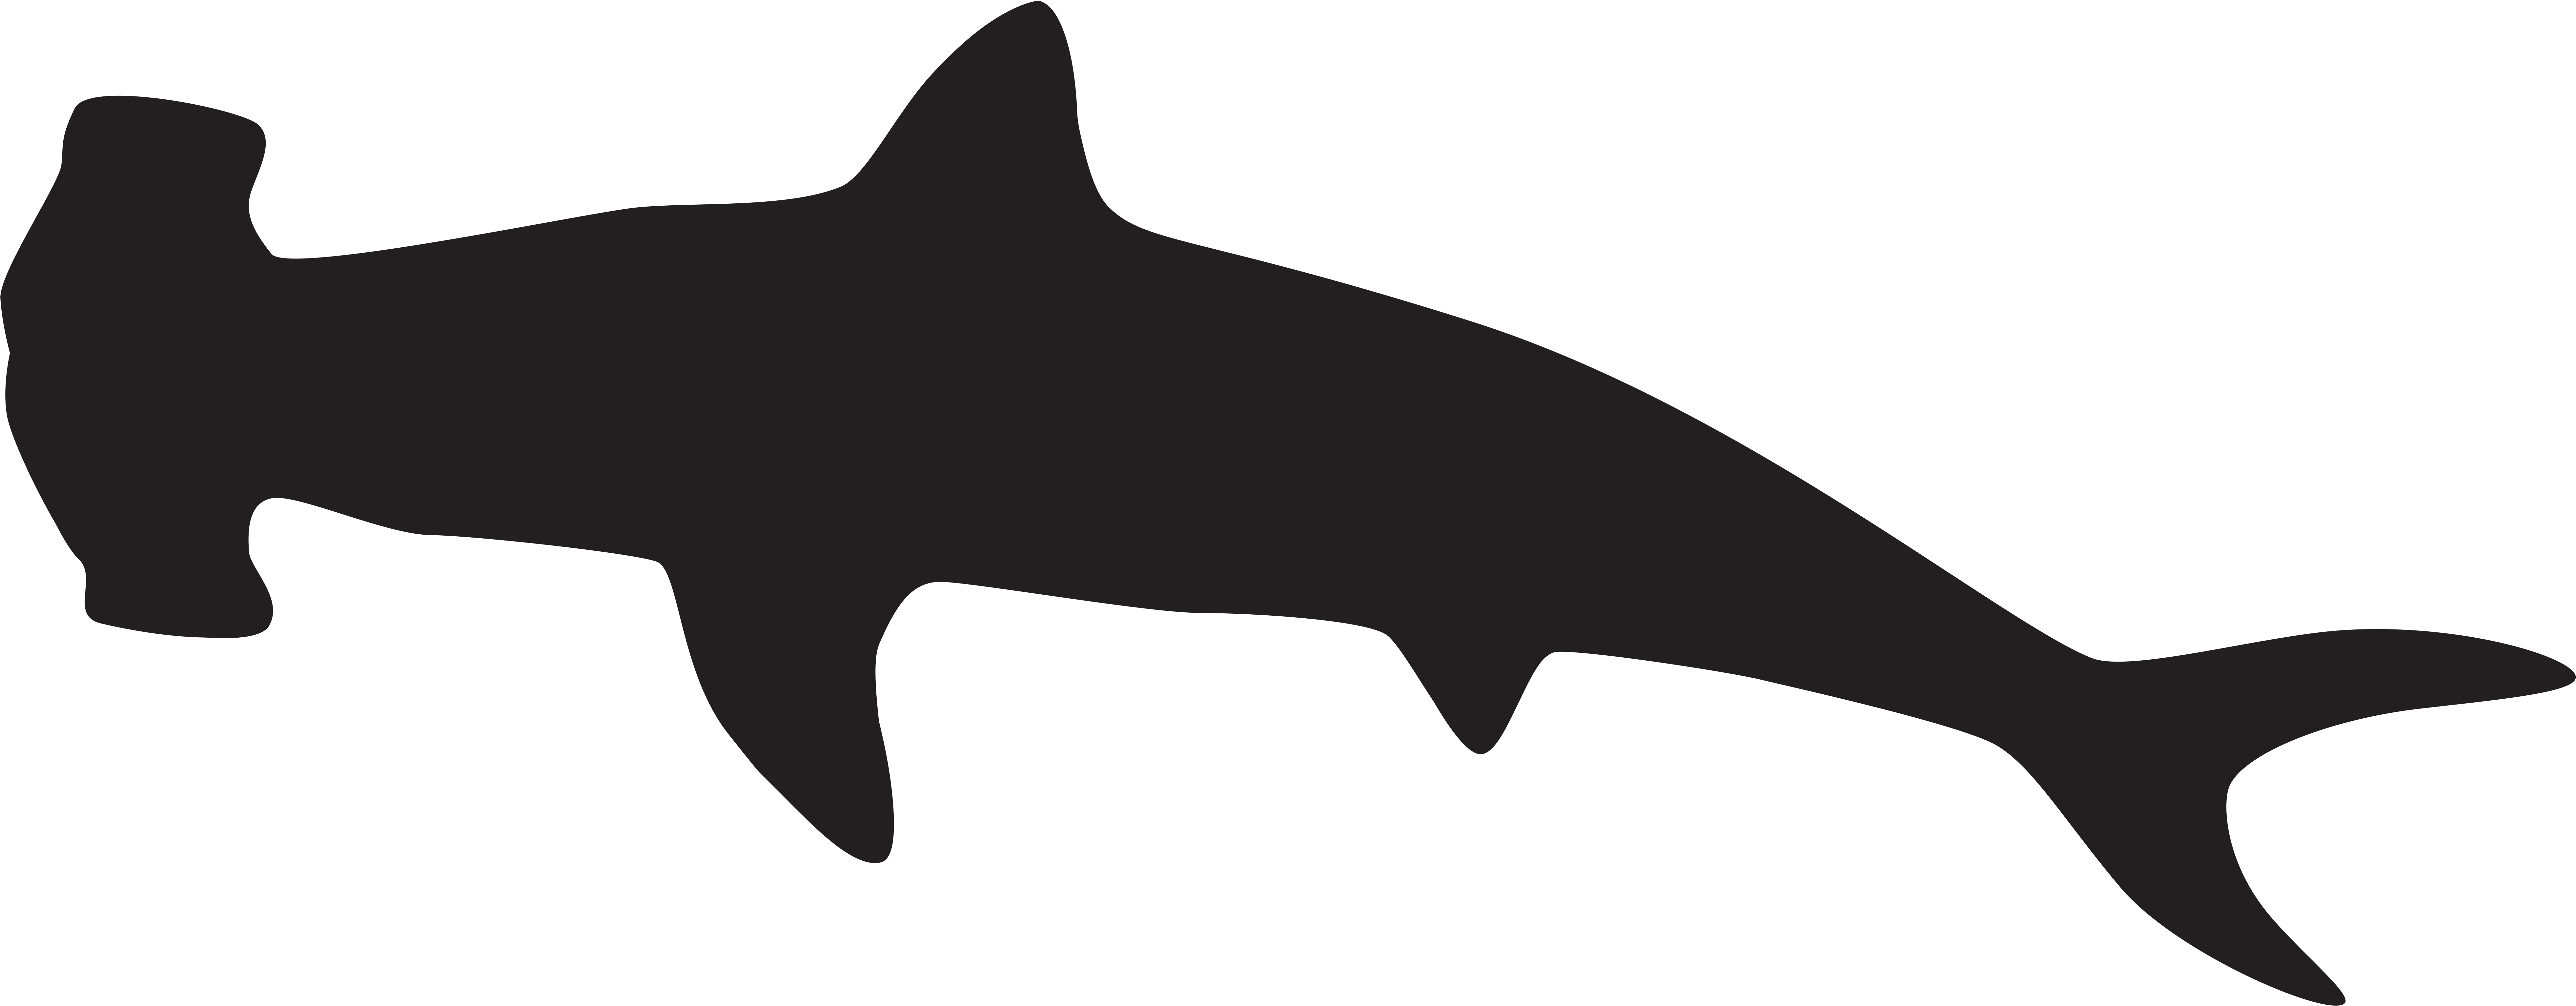 Hammerhead Shark Silhouette Png Clip Art Imageu200b - Hammerhead Shark Silhouette (8000x3188)